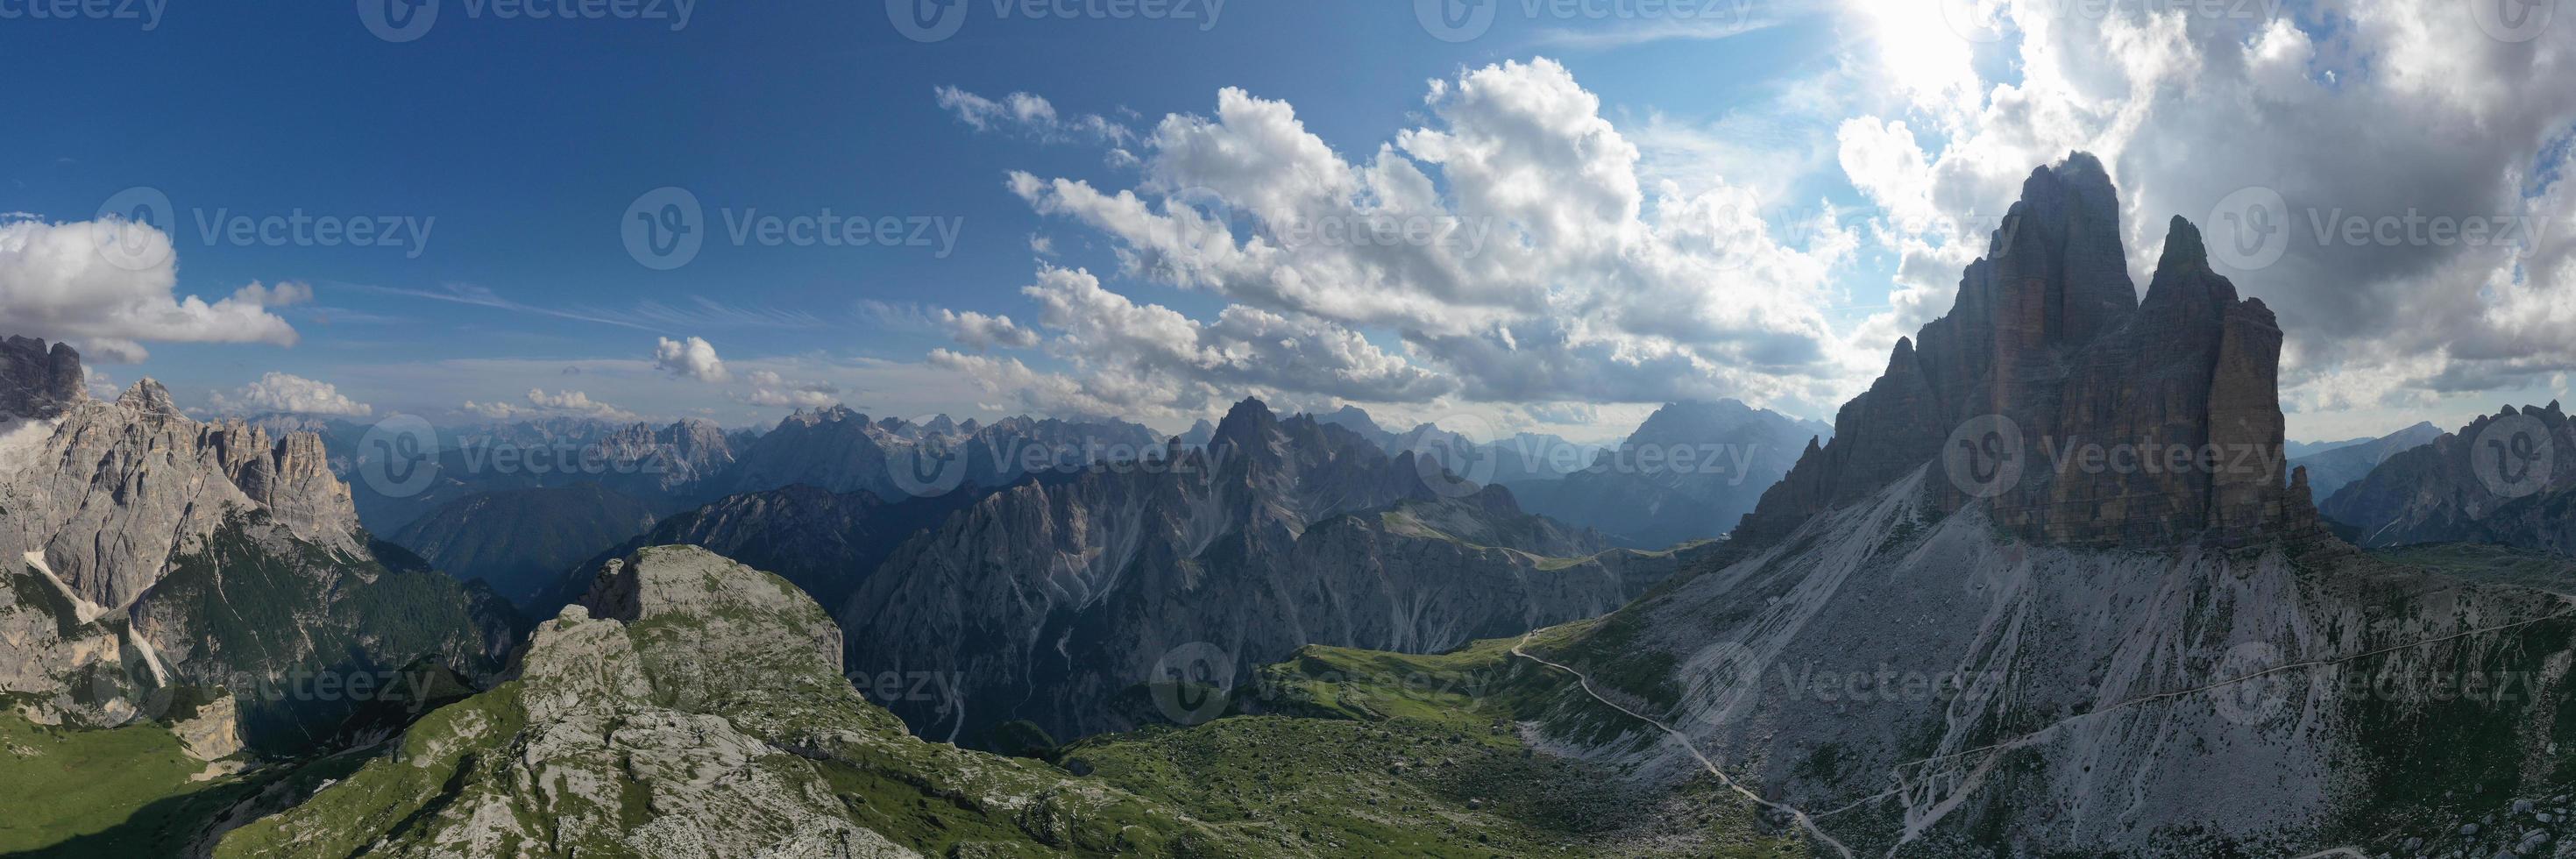 schön sonnig Tag im Dolomiten Berge. Aussicht auf tre cime di lavaredo - - drei berühmt Berg Spitzen Das ähneln Schornsteine. foto